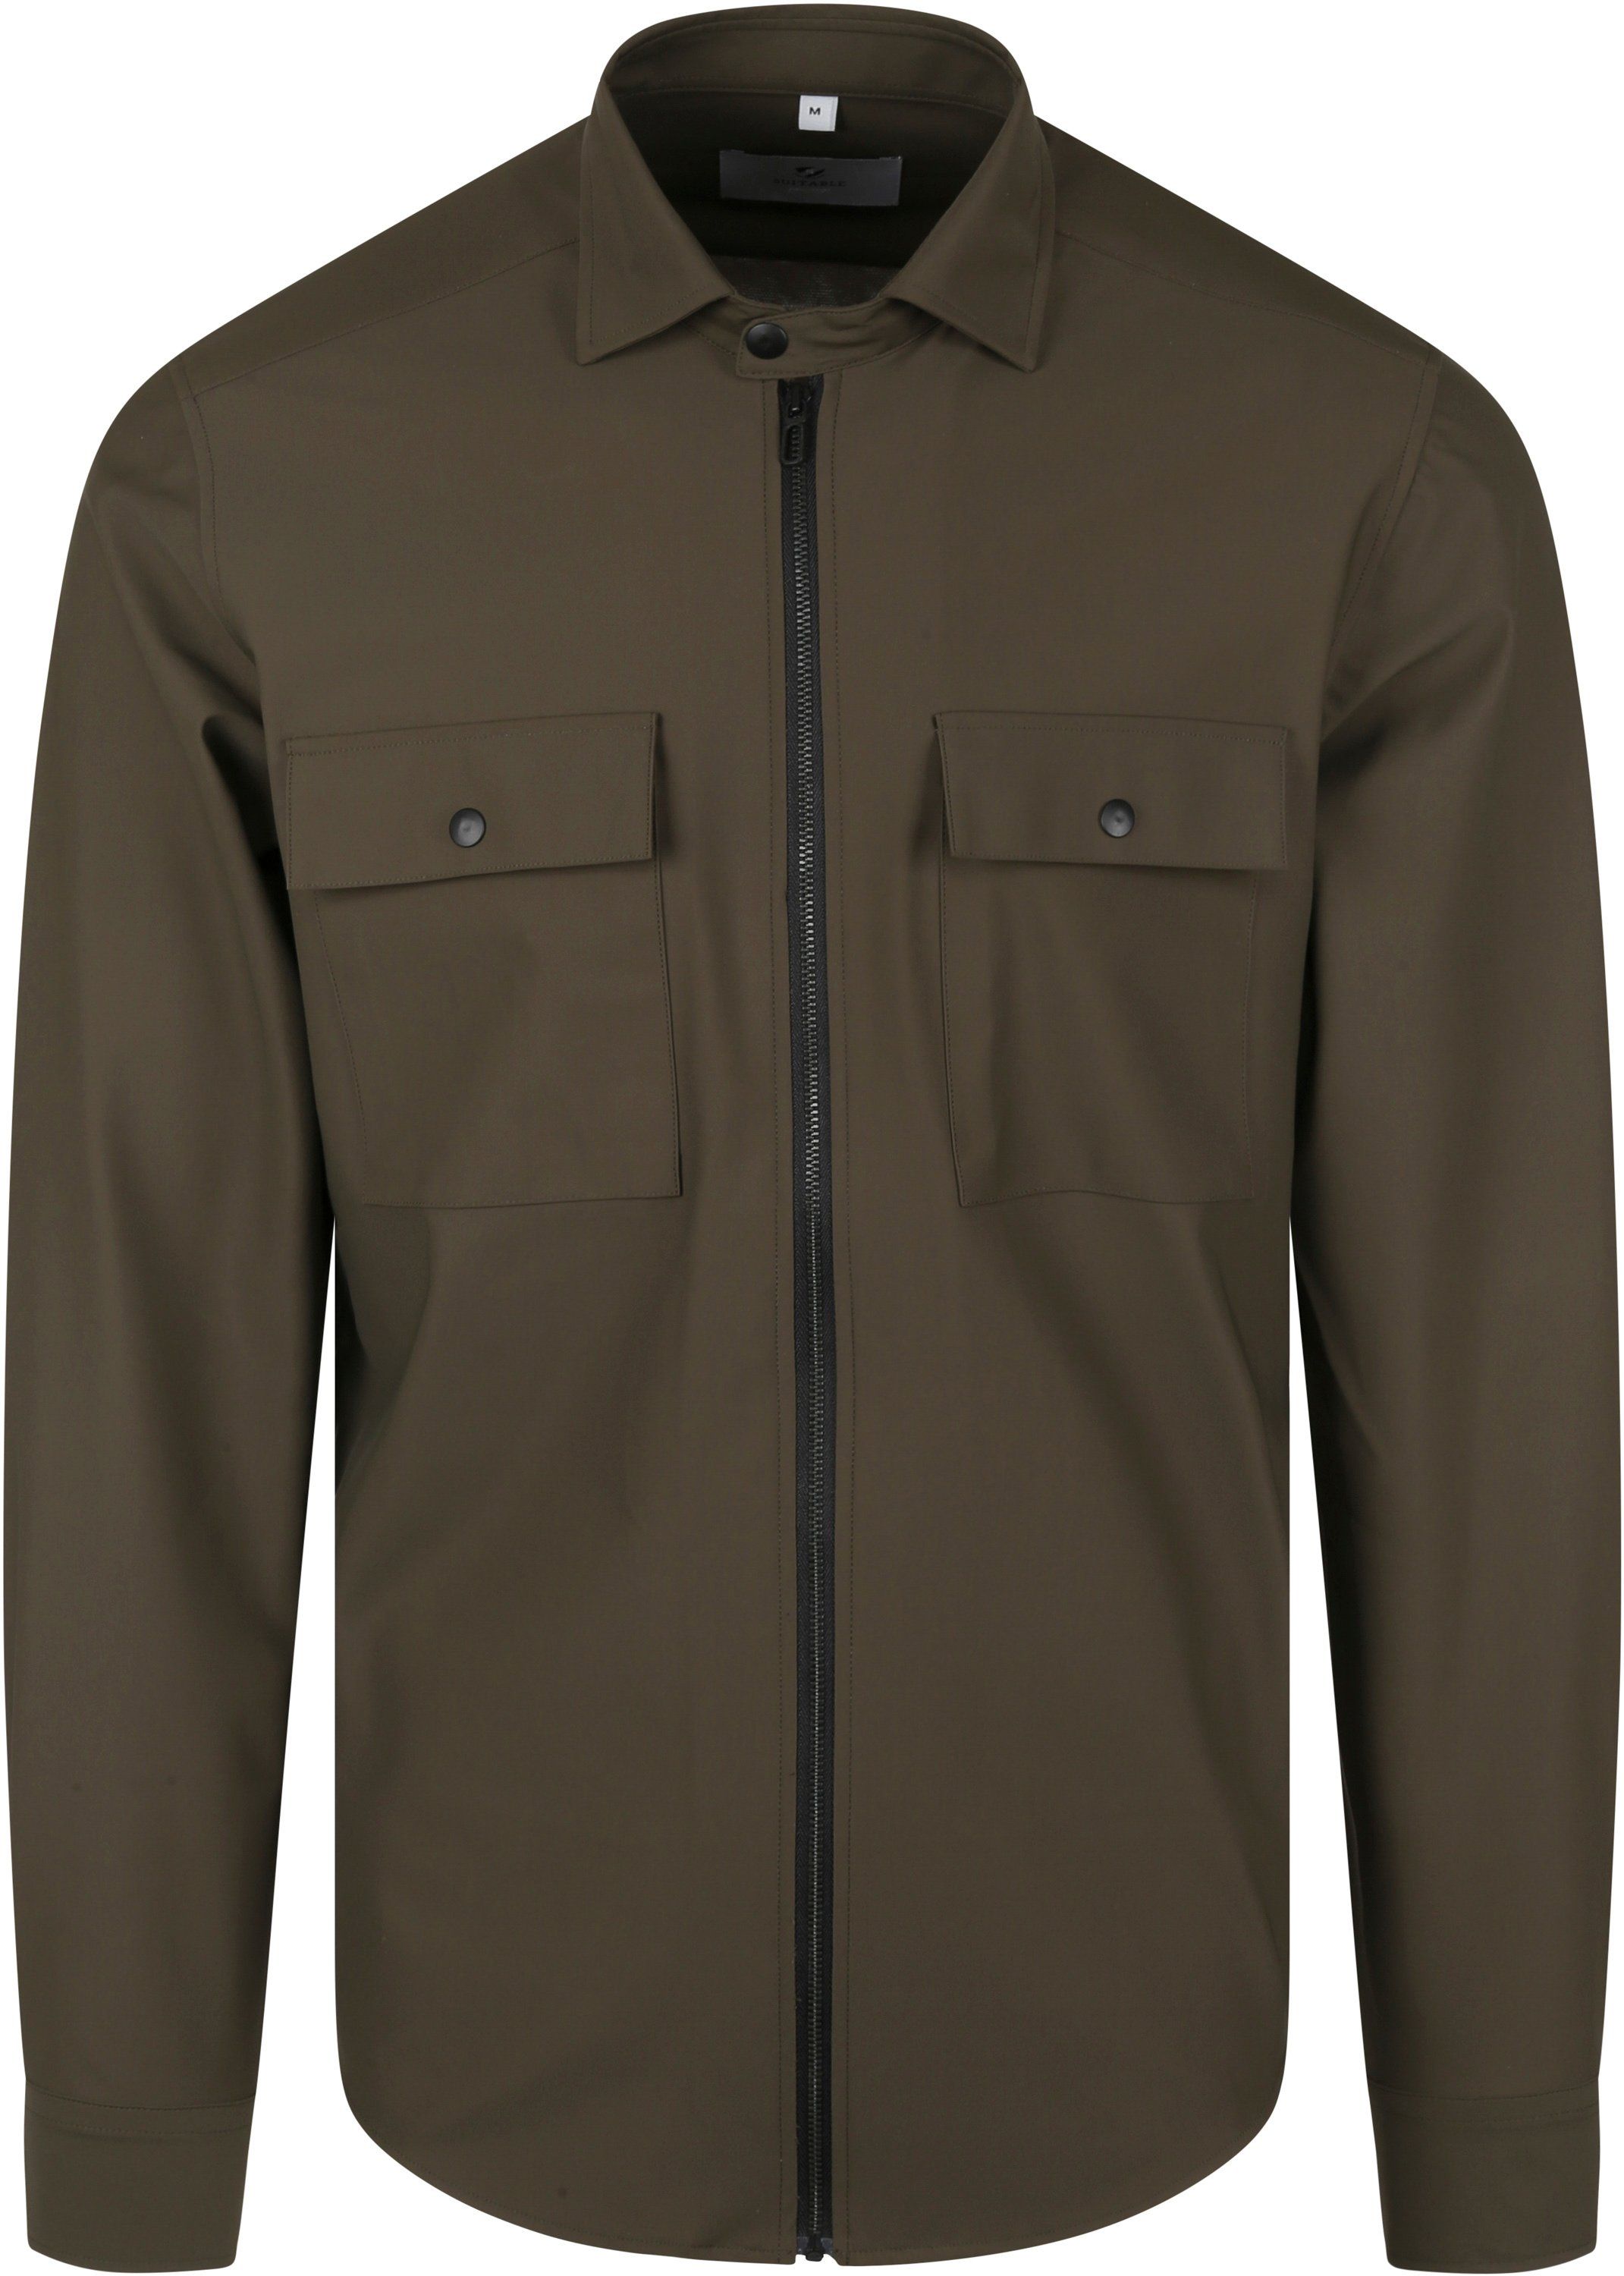 Suitable Jacket Shirt Dark Green Dark Green size L